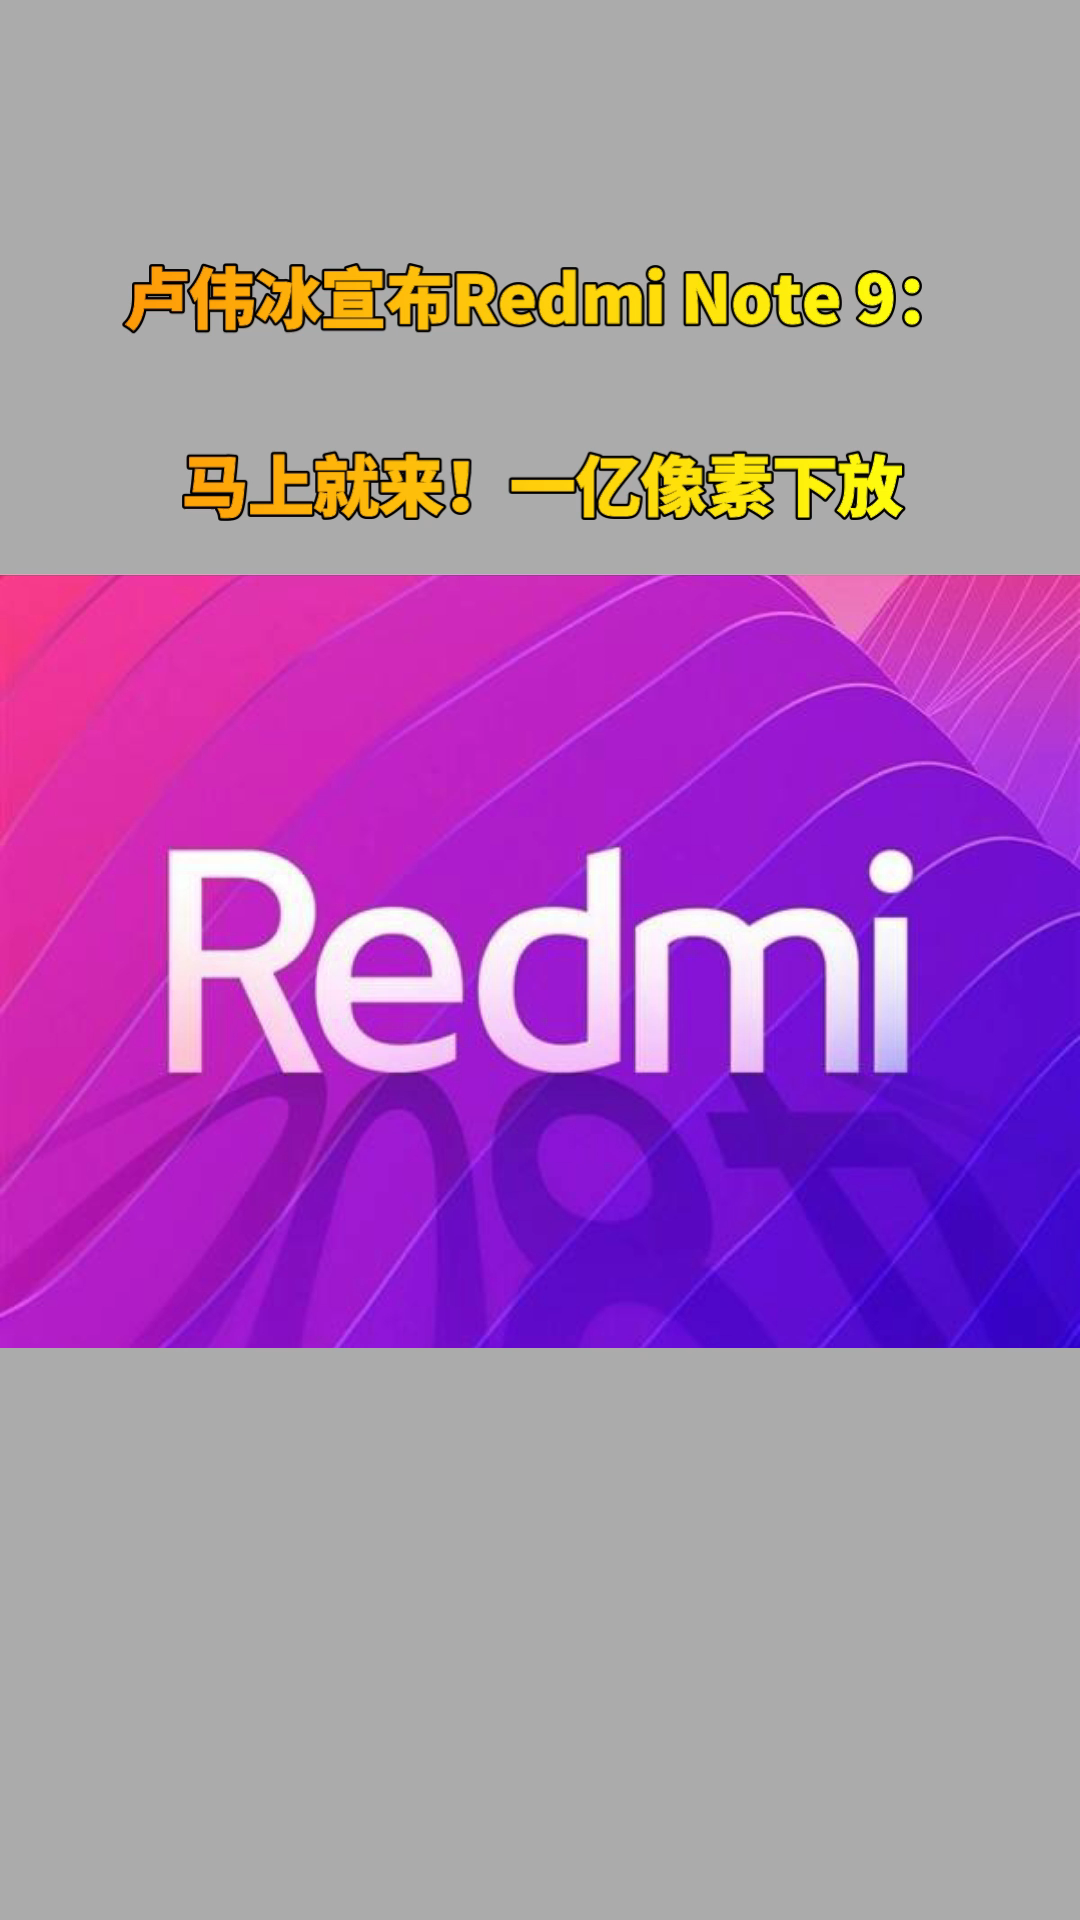 一亿像素下放！卢伟冰宣布Redmi Note 9：马上就来